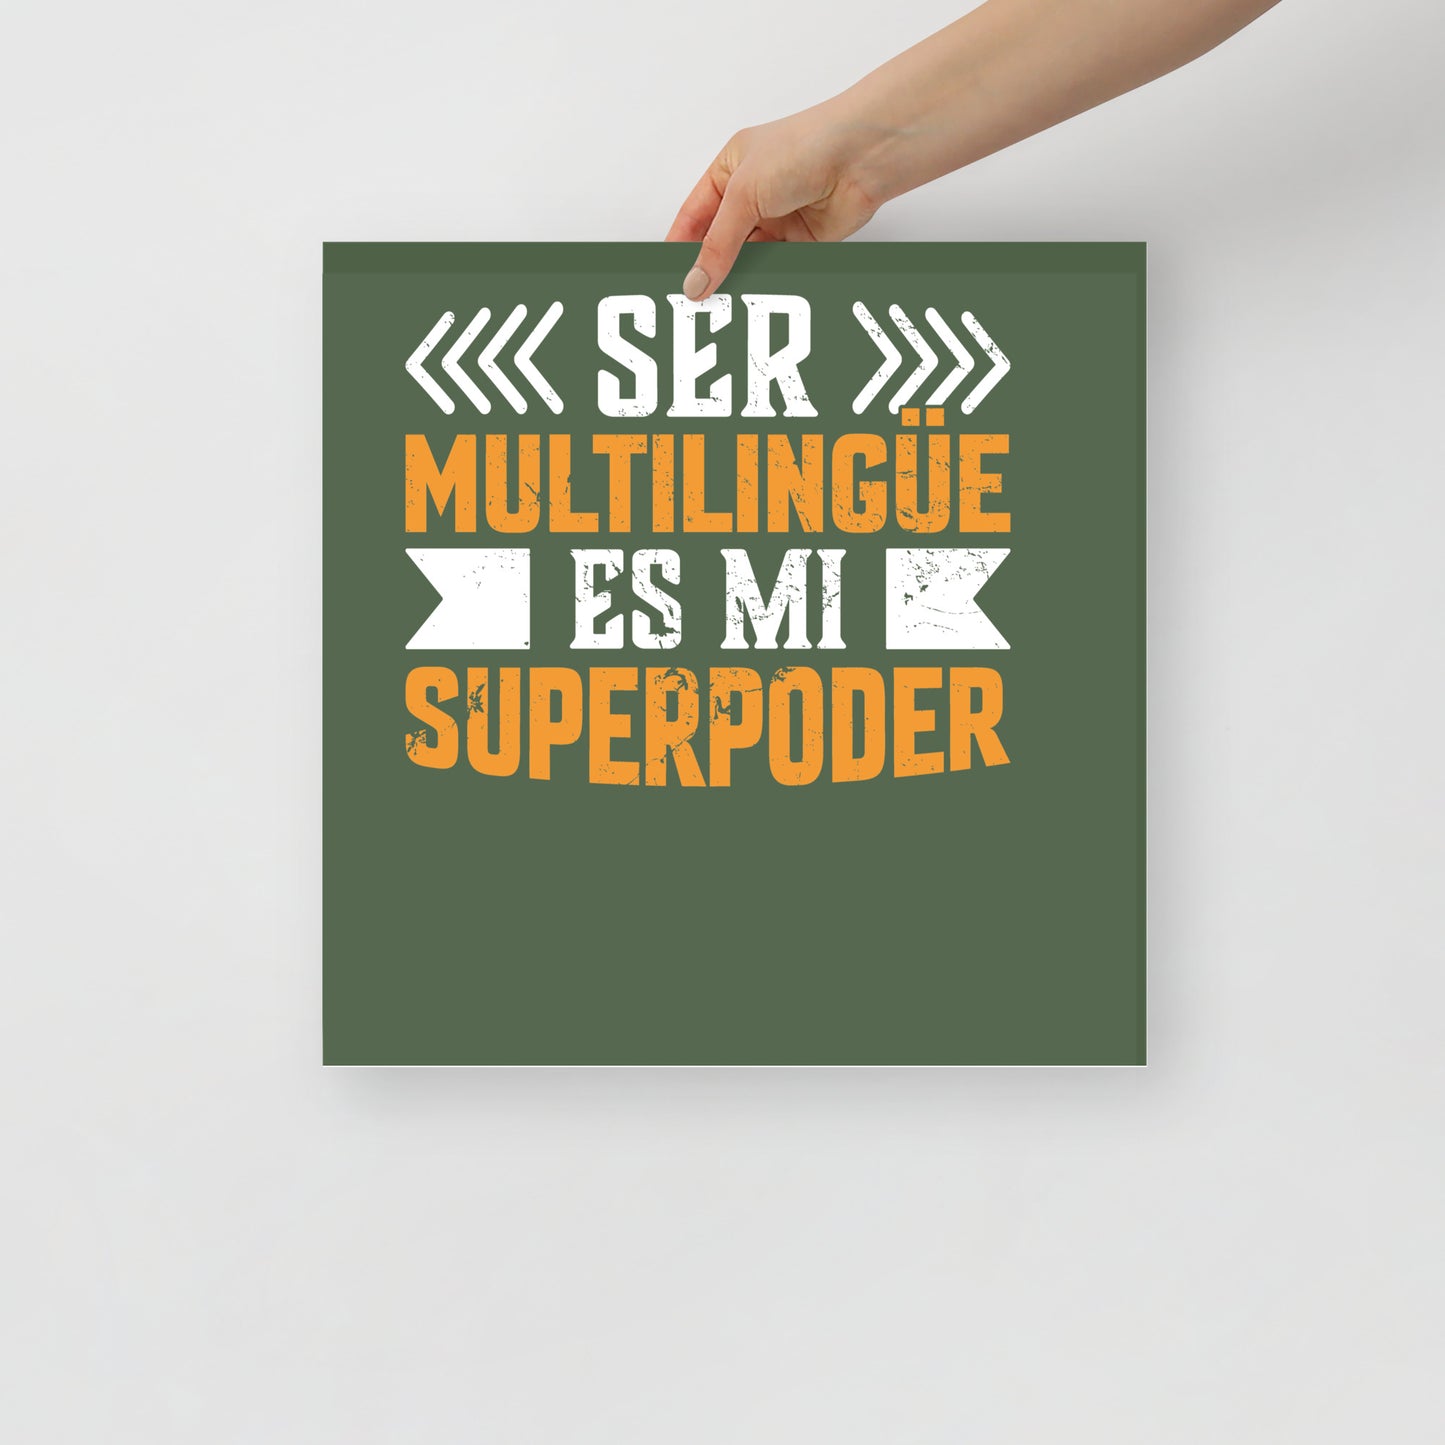 Ser multilingüe es mi póster de superpoderes (en español)